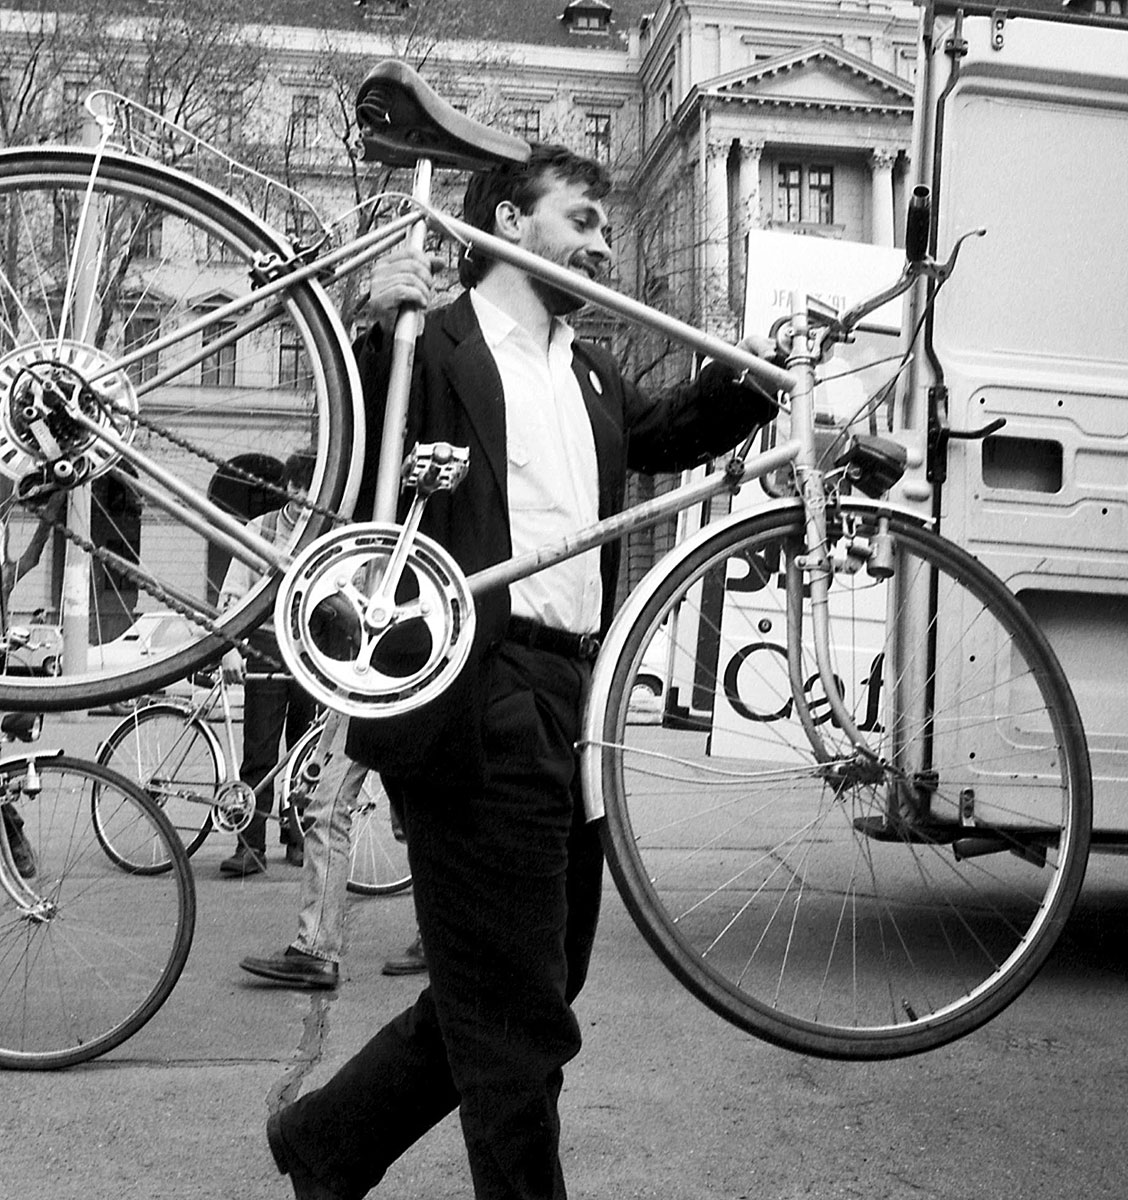 Még biciklivel, de már a parlamentbe... A kép 1991-ben készült